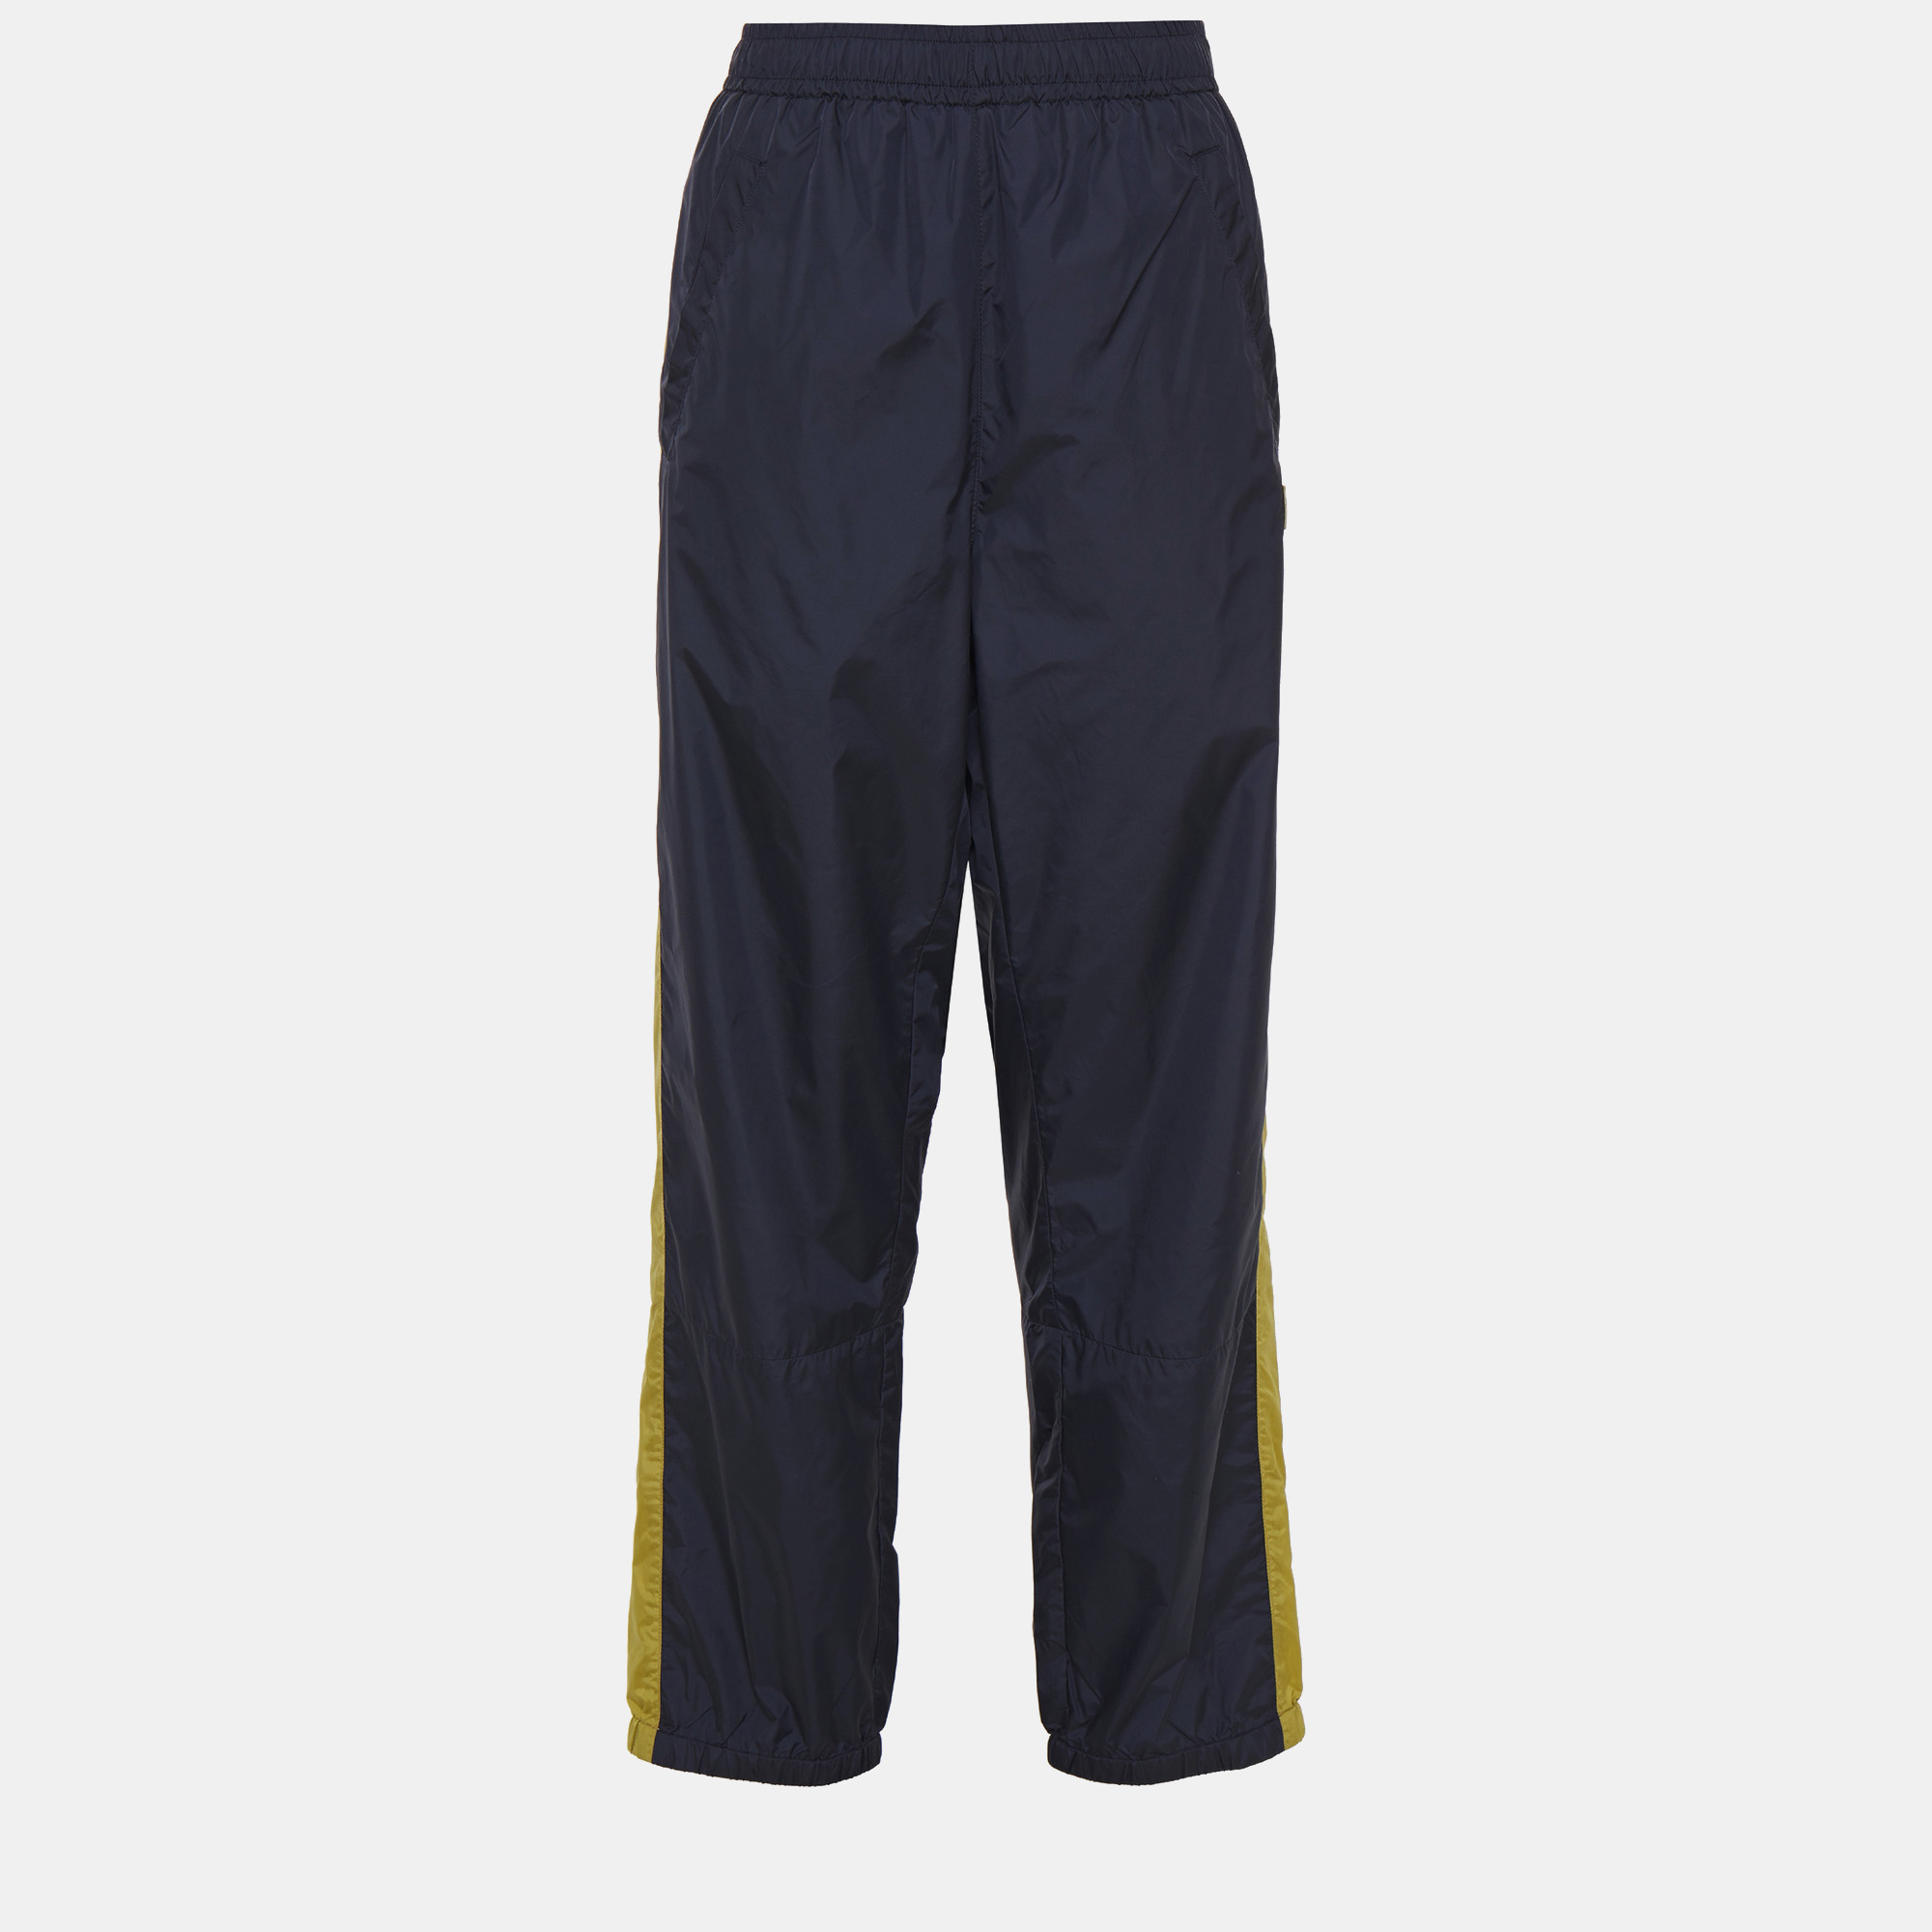 Acne studios navy blue nylon jogger pants xxs